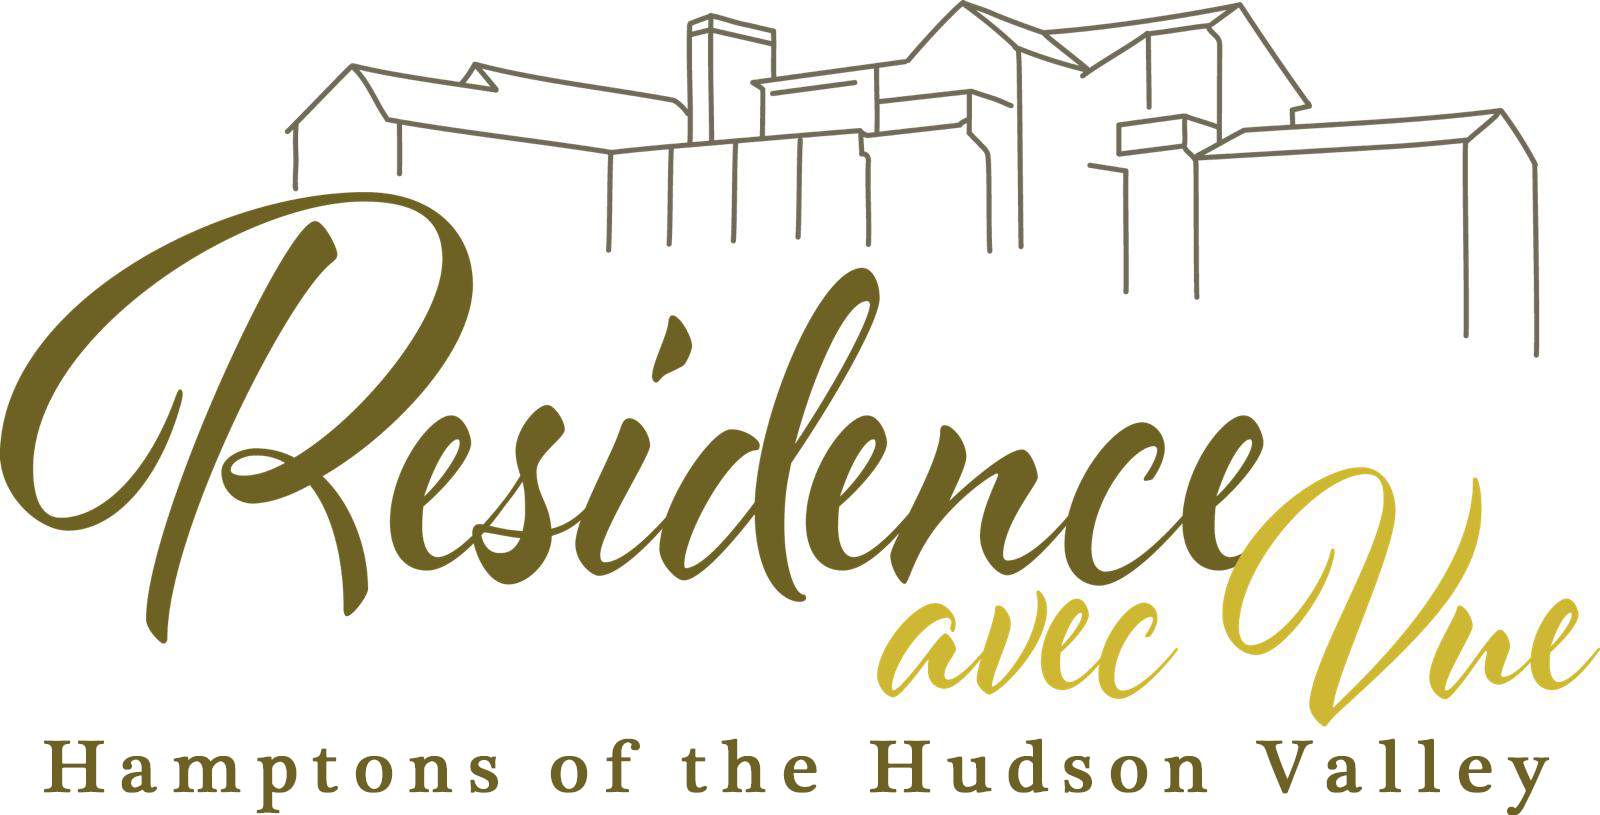 Residence Avec Vue - Hamptons of the Hudson Valley